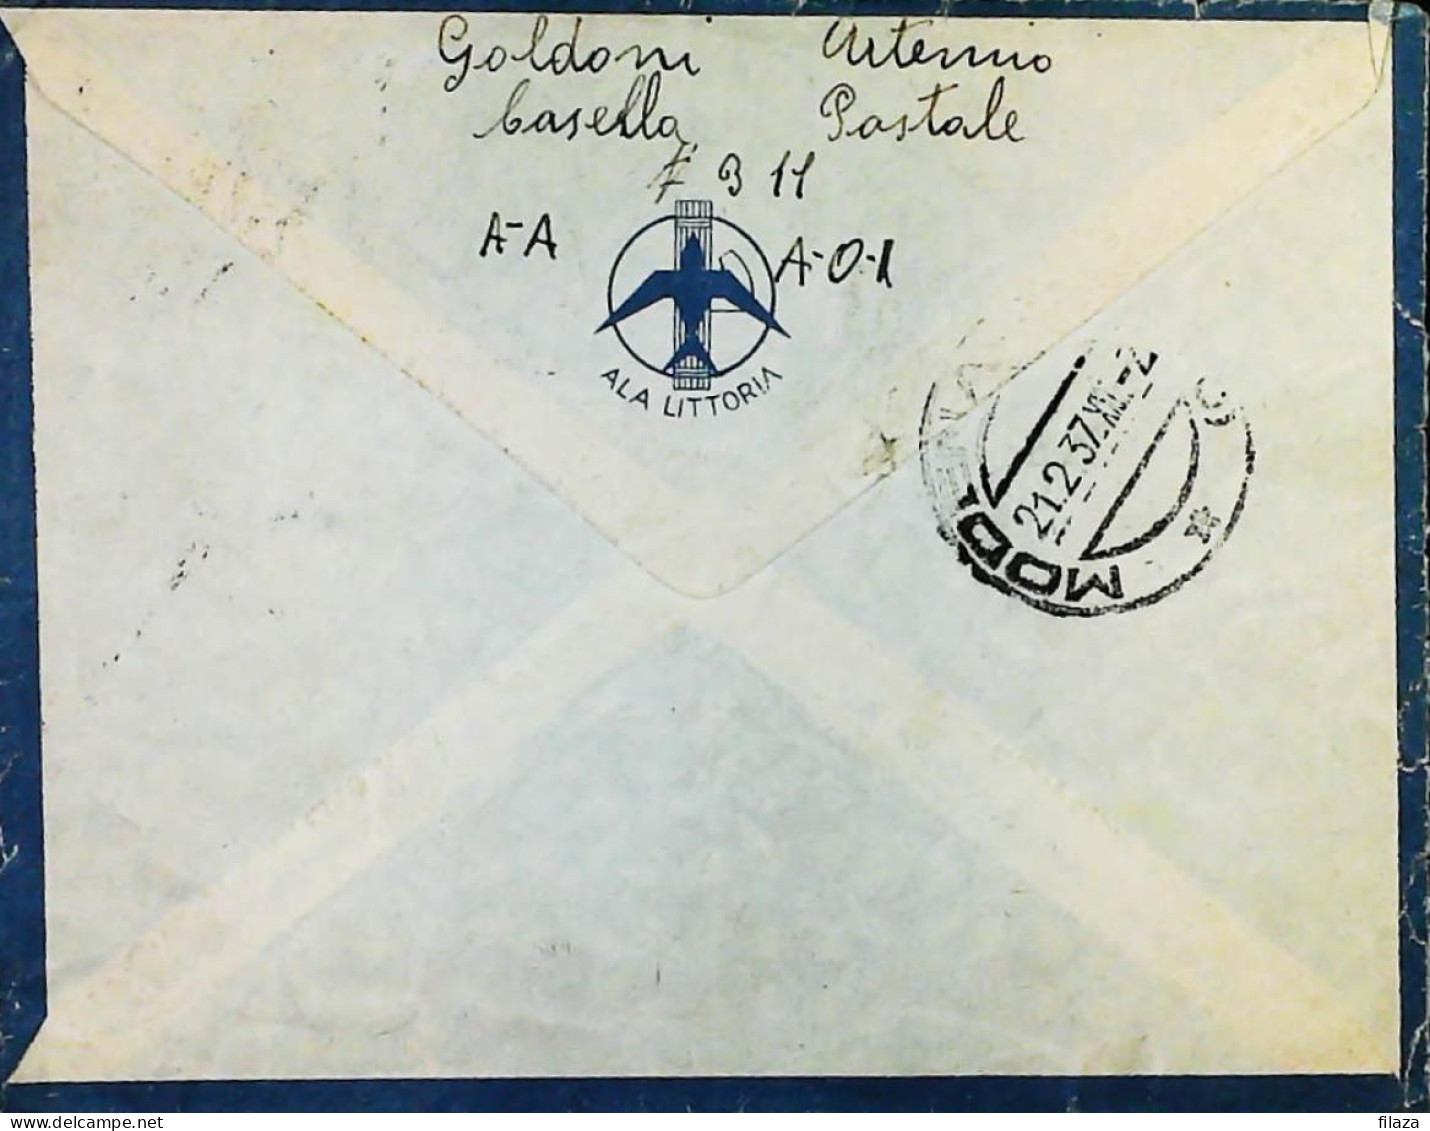 ITALIA - COLONIE -  ETIOPIA C.75 X 2 Lettera Da ADDIS ABEBA Del 1937- S6173 - Etiopia